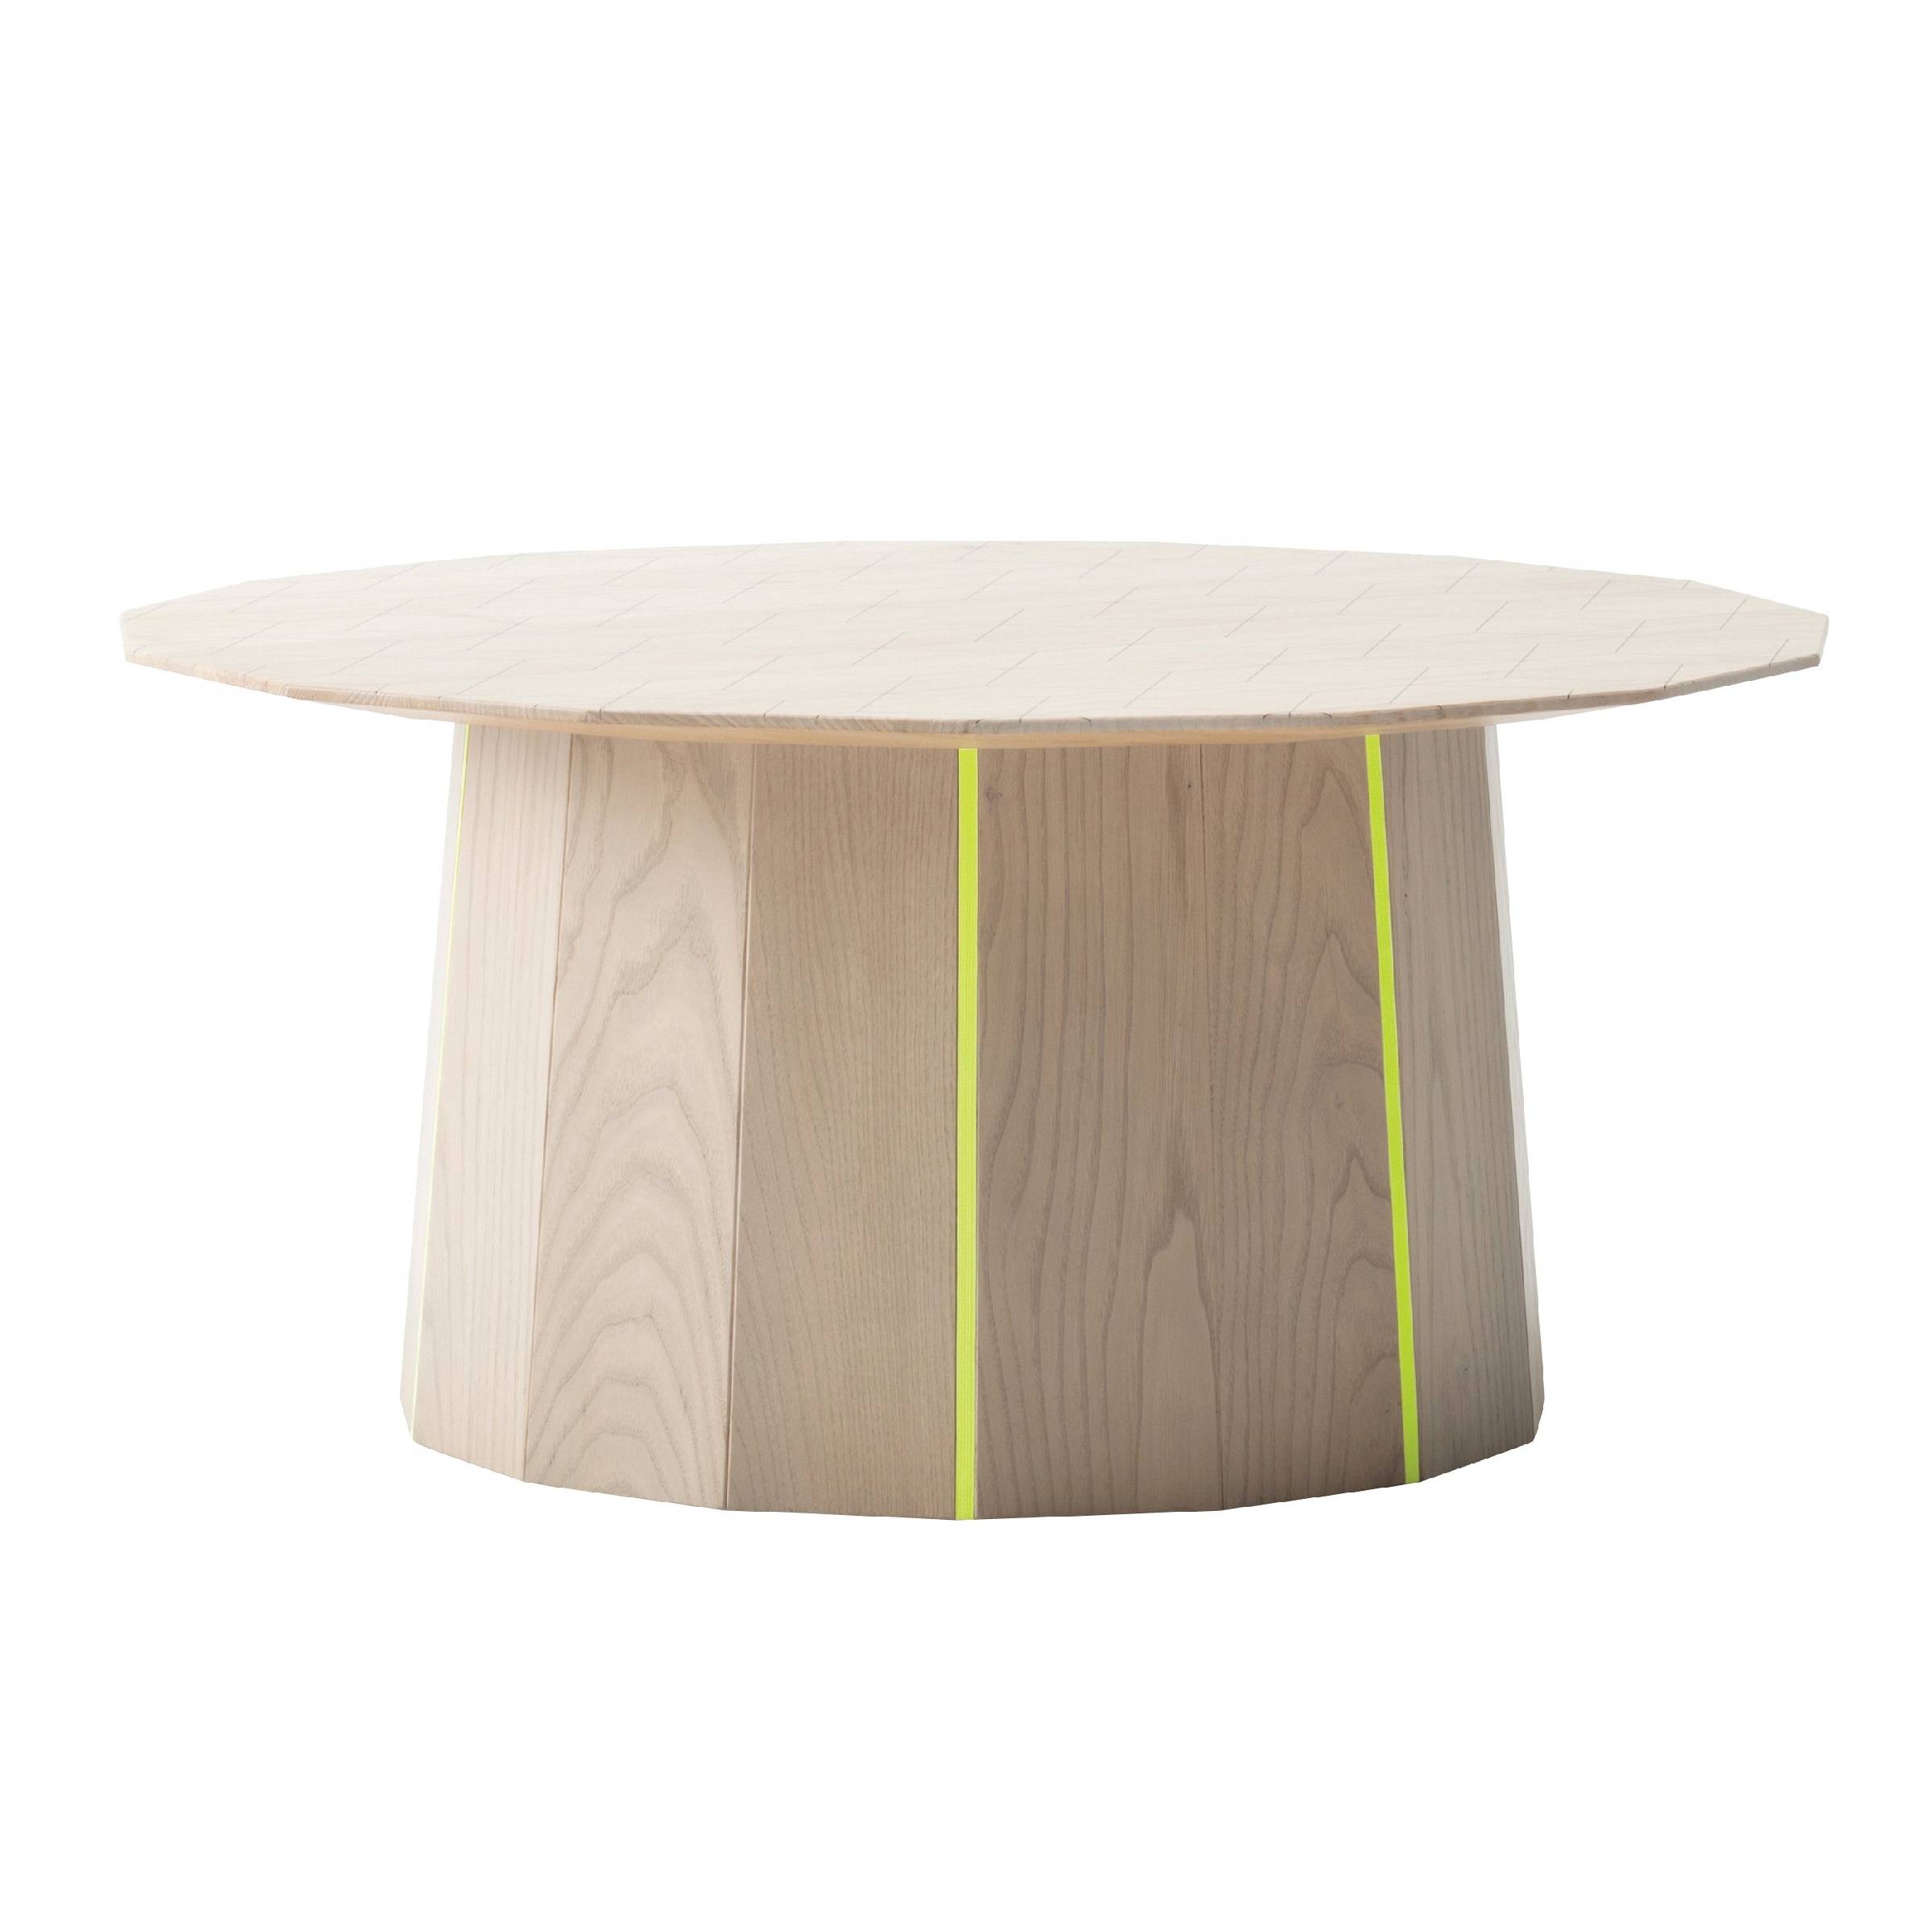 Colour Wood Tables: 28.2